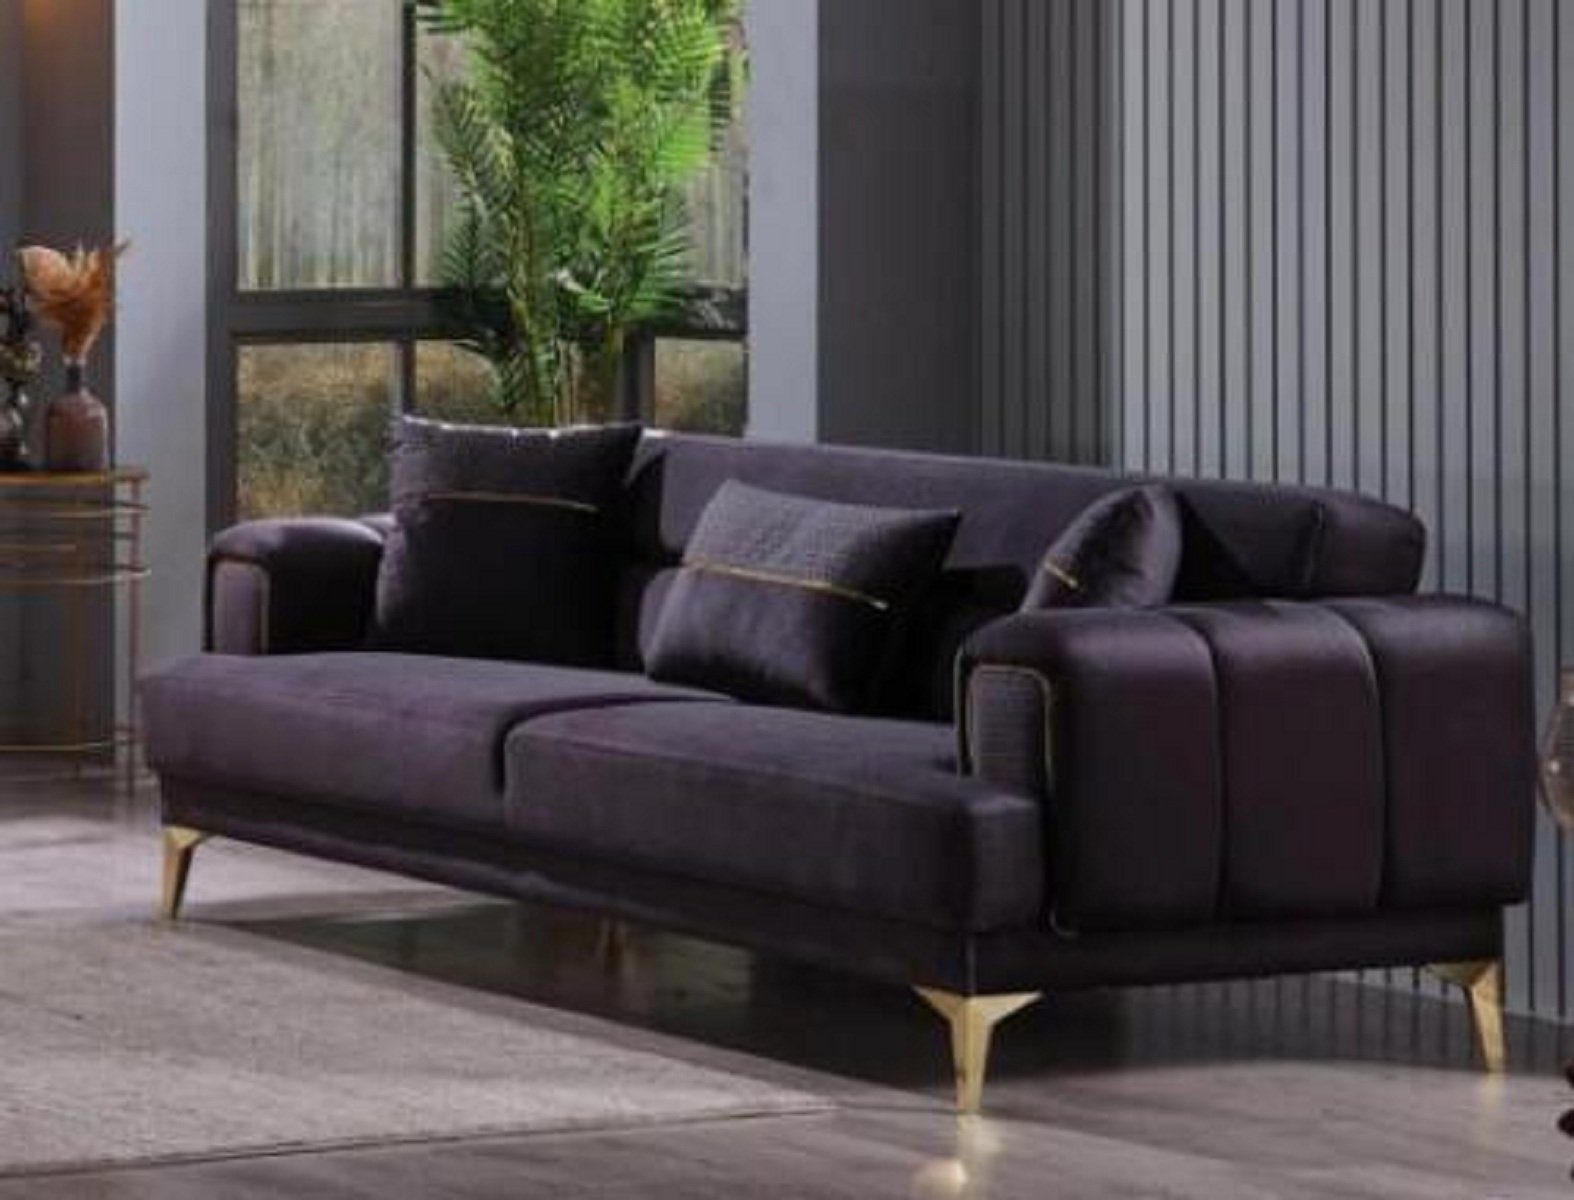 JVmoebel 3-Sitzer Modernes Luxus Sofa 3-Sitzer Textilcouch Designer Wohnzimmermöbel Samt, 100 Teile, Made in Europa